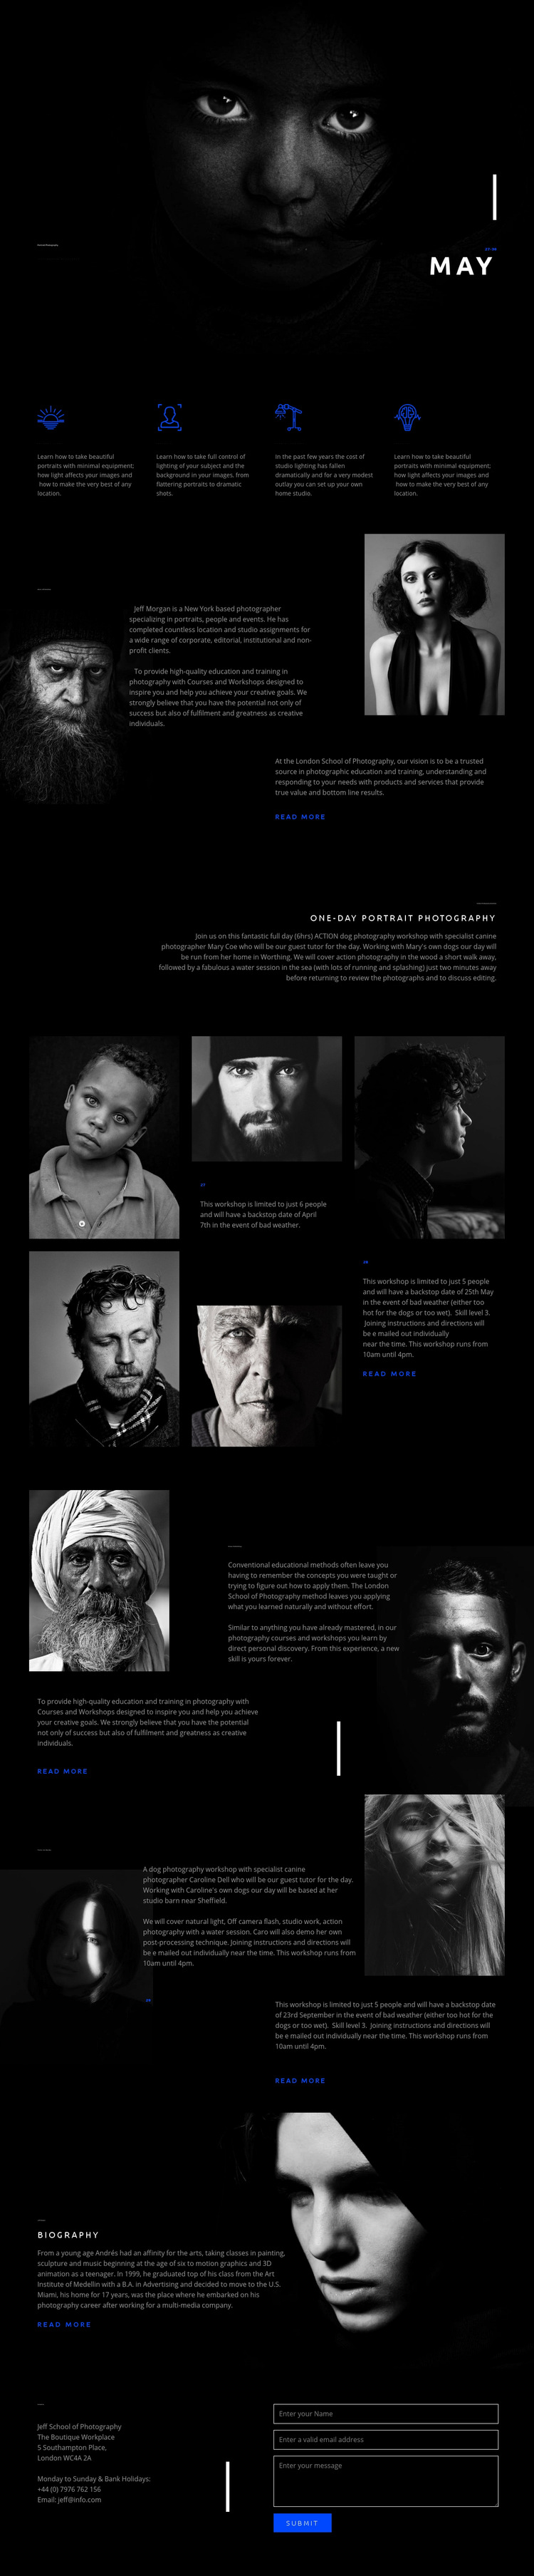 Amazing portrait art Web Page Design